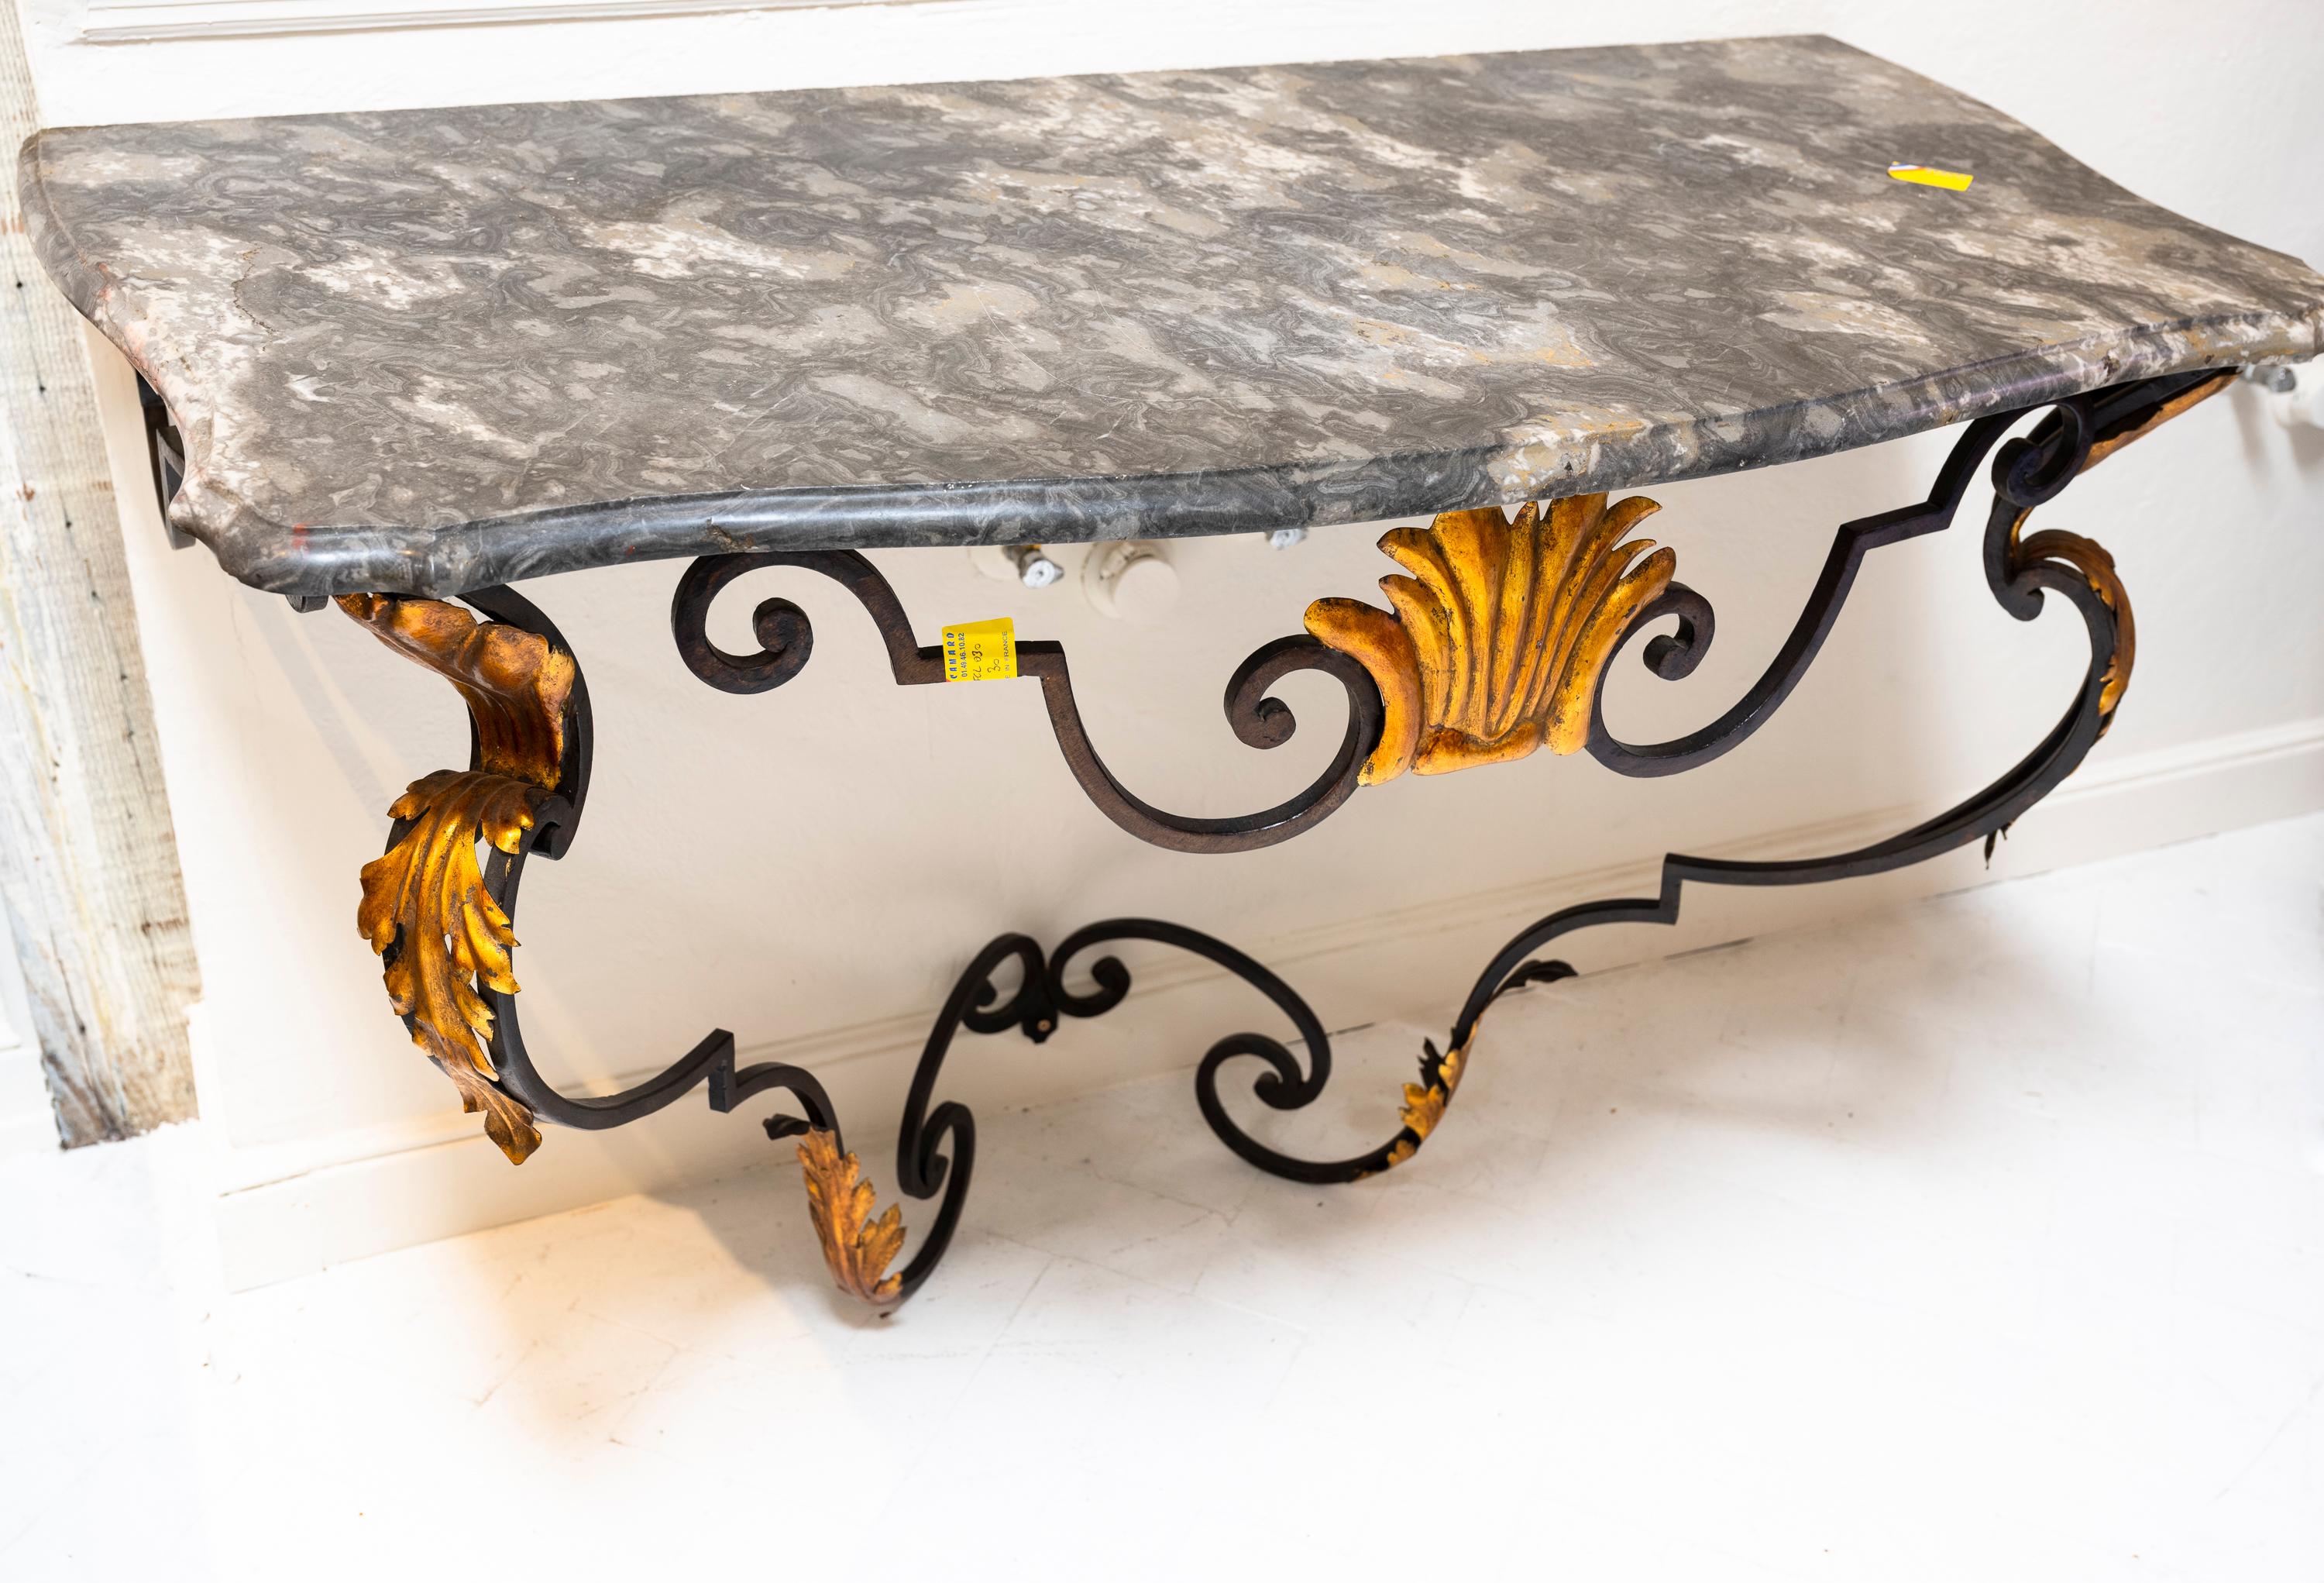 Konsole mit verschnörkelter Eisenmarmorplatte (um 1860). Dieser gleichzeitig massive und luftige Eisentisch mit Blattgold-Details ist nicht erdrückend und macht in jedem Raum eine gute Figur. Platte aus grauem italienischem Marmor.

Provenienz: ein